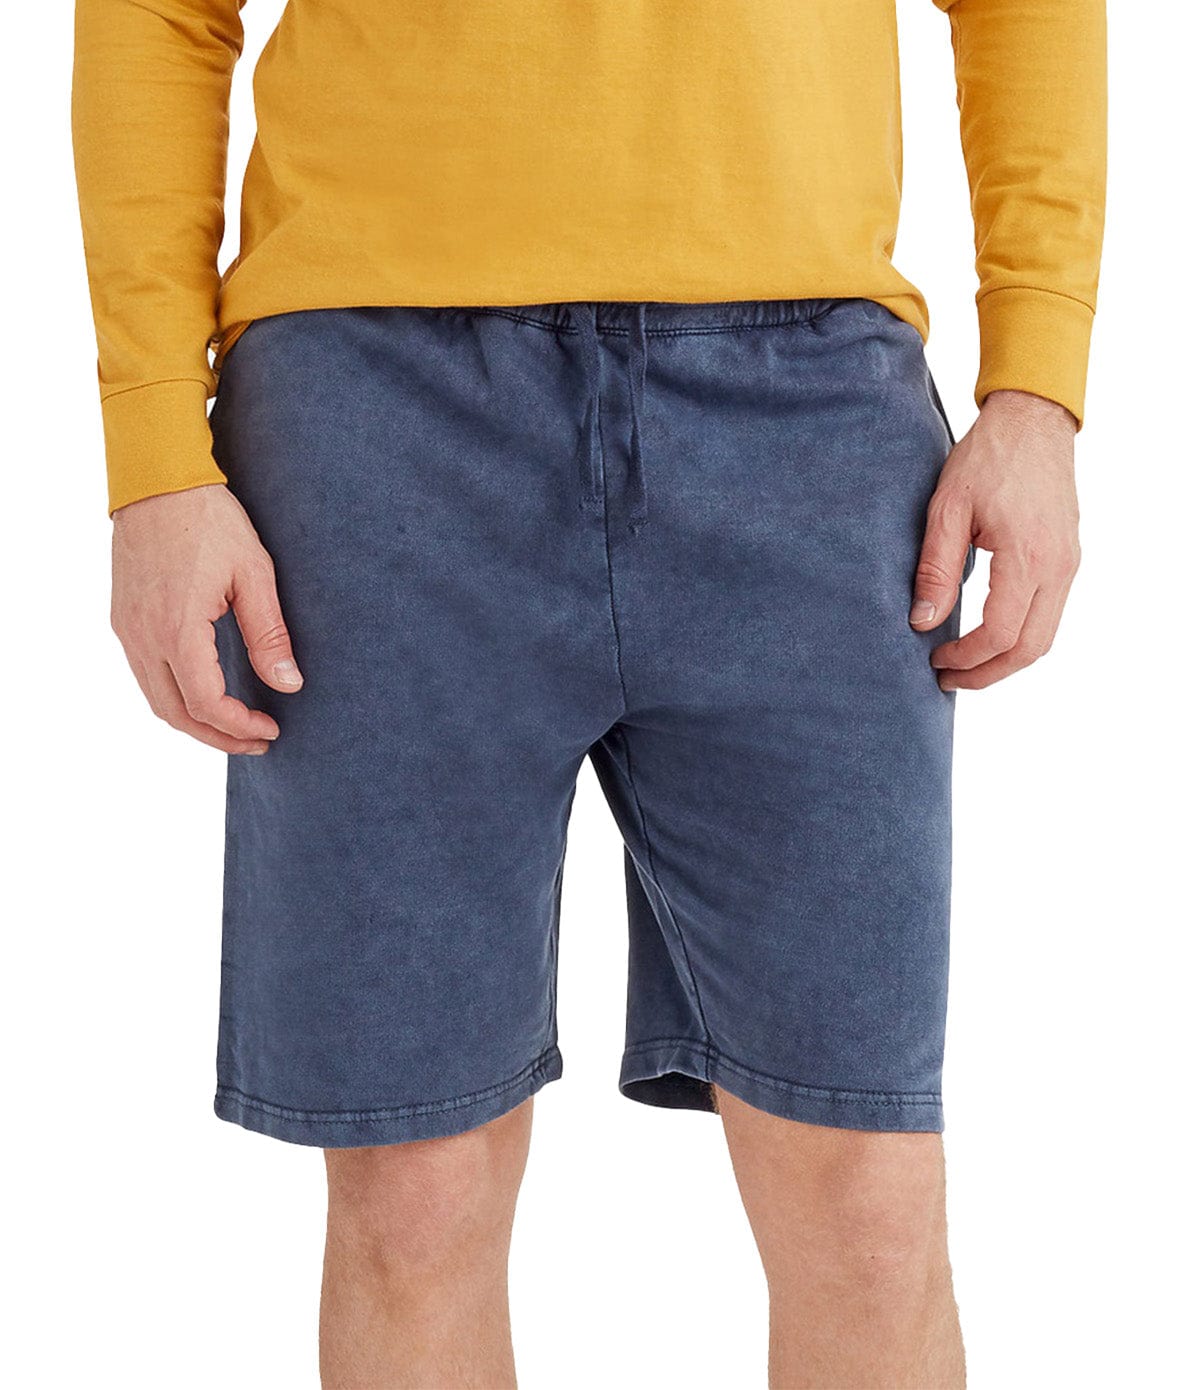 Men's Vintage Fleece Shorts Worn by Model